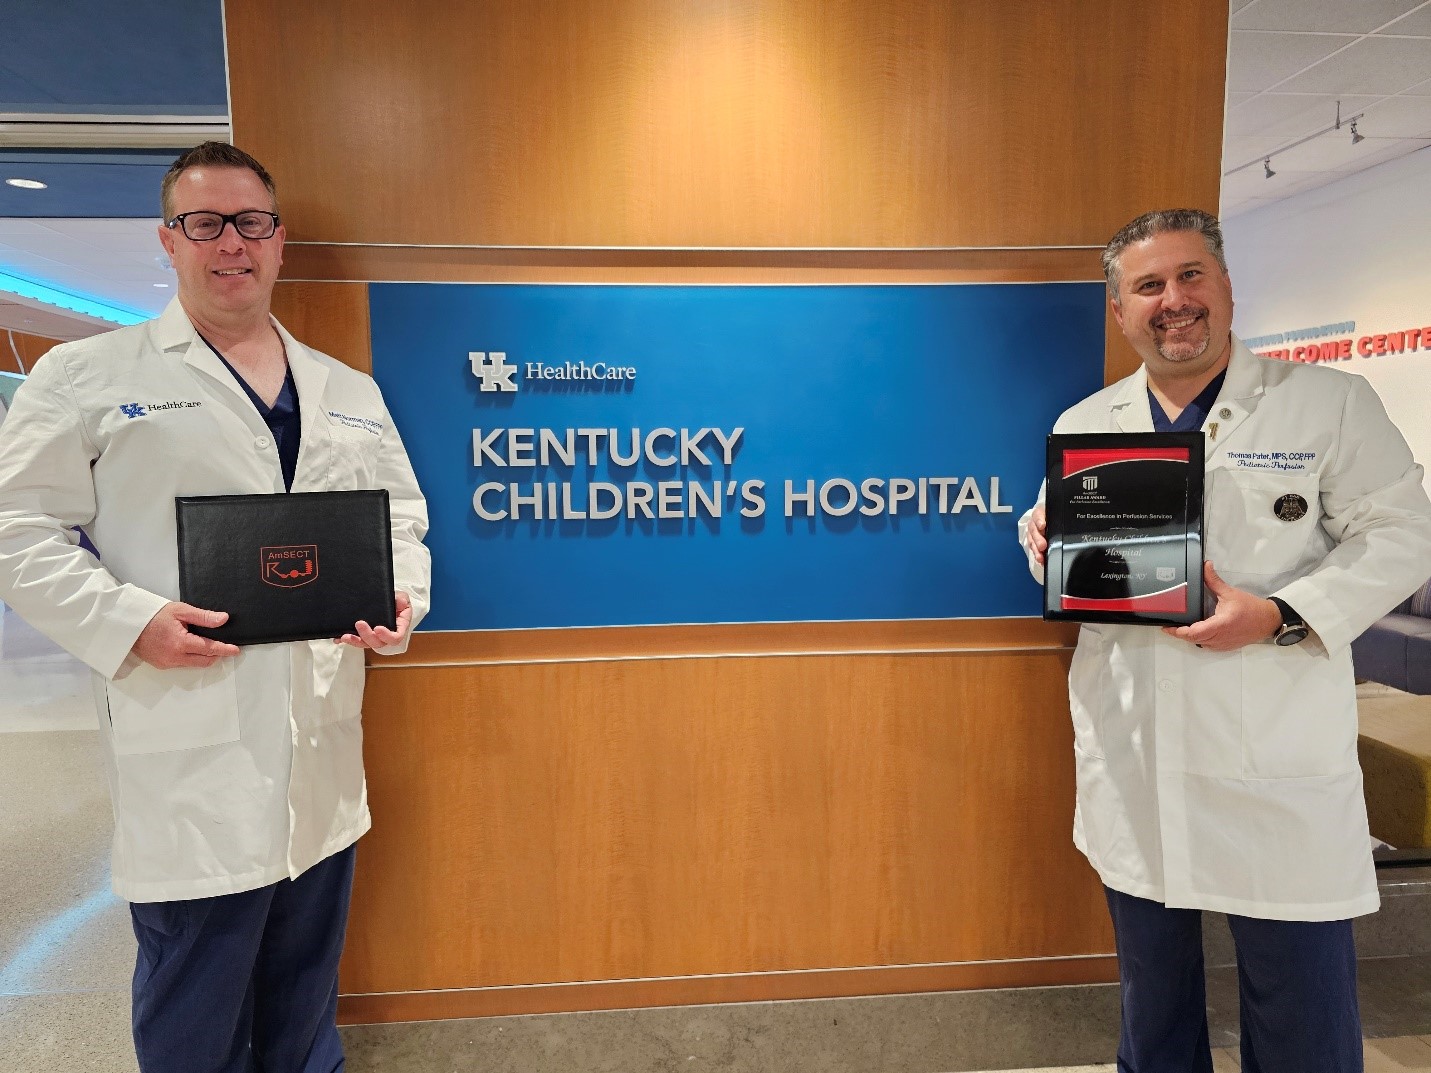 Kentucky Children's Hospital